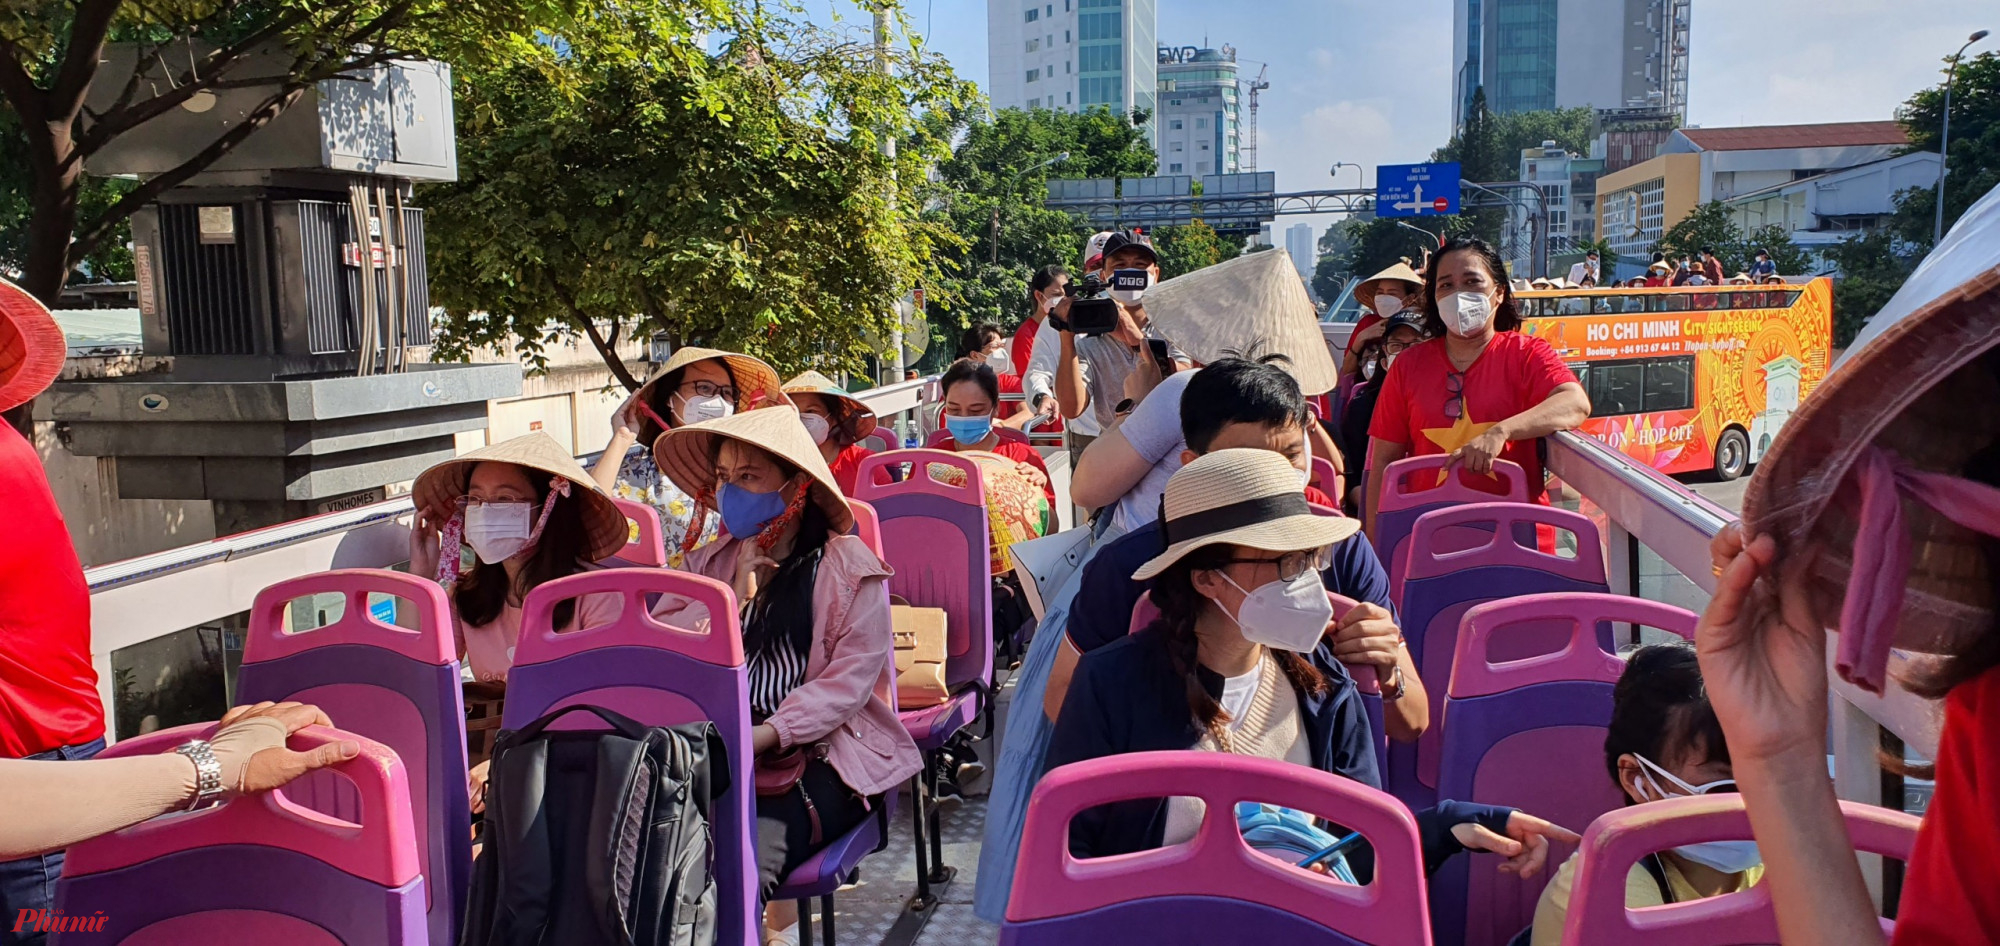 Chuyến tham quan thành phố bằng xe buýt 2 tầng dành cho cán bộ Hội Phụ nữ